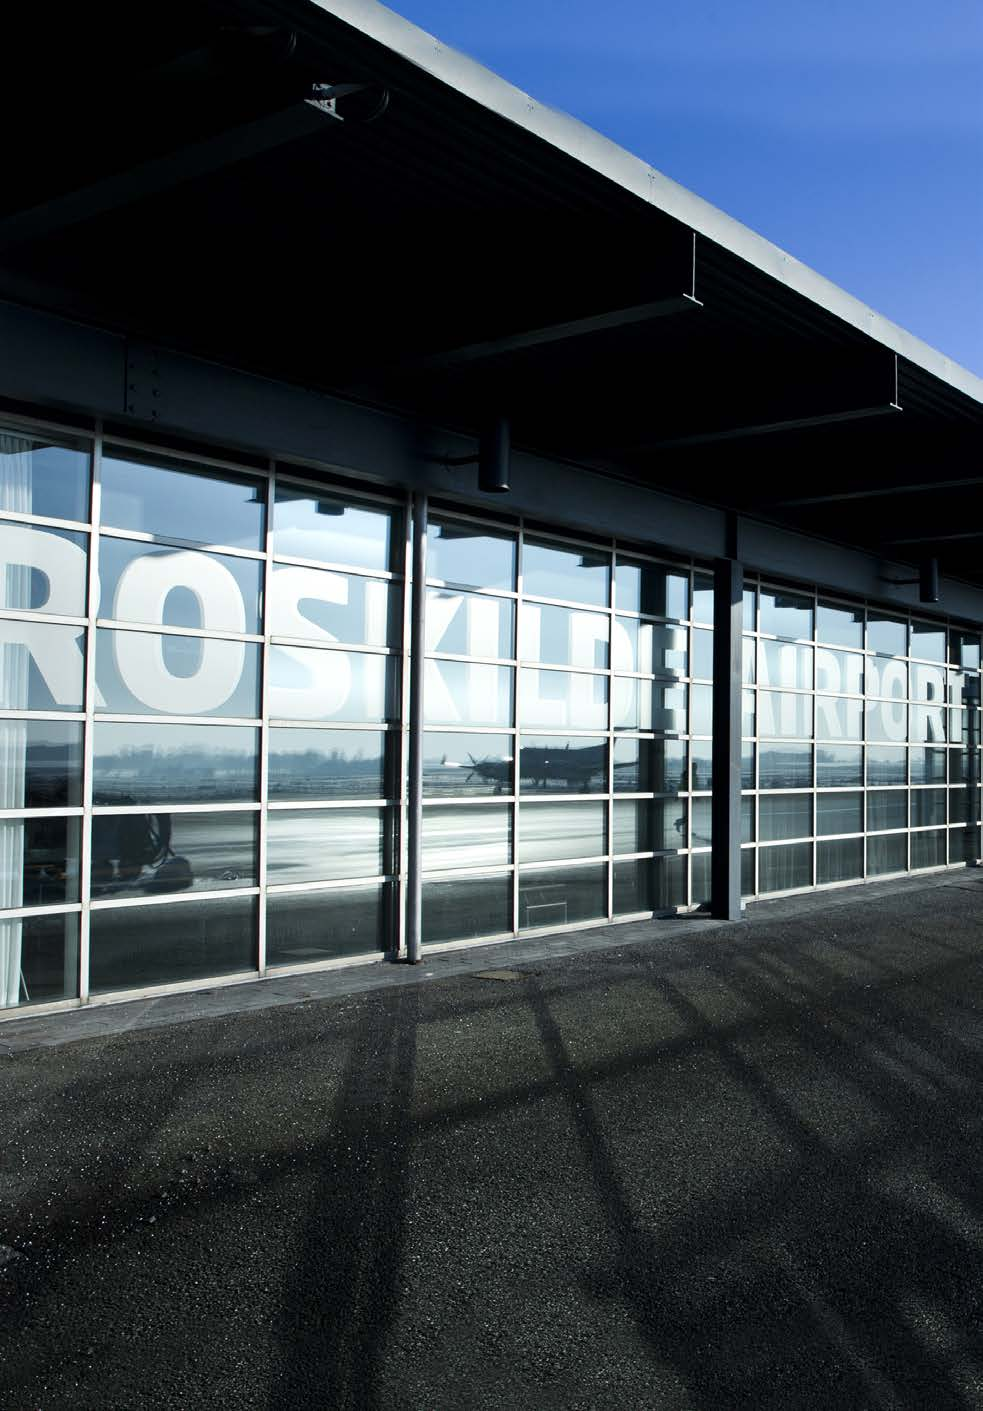 35 LEDELSESBERETNING > PERFORMANCE > SEGMENTERNES RESULTATER Segmenternes resultater ROSKILDE LUFTHAVN Antallet af operationer i Roskilde Lufthavn steg i med 5,5%, mens let af passagerer faldt 1%,